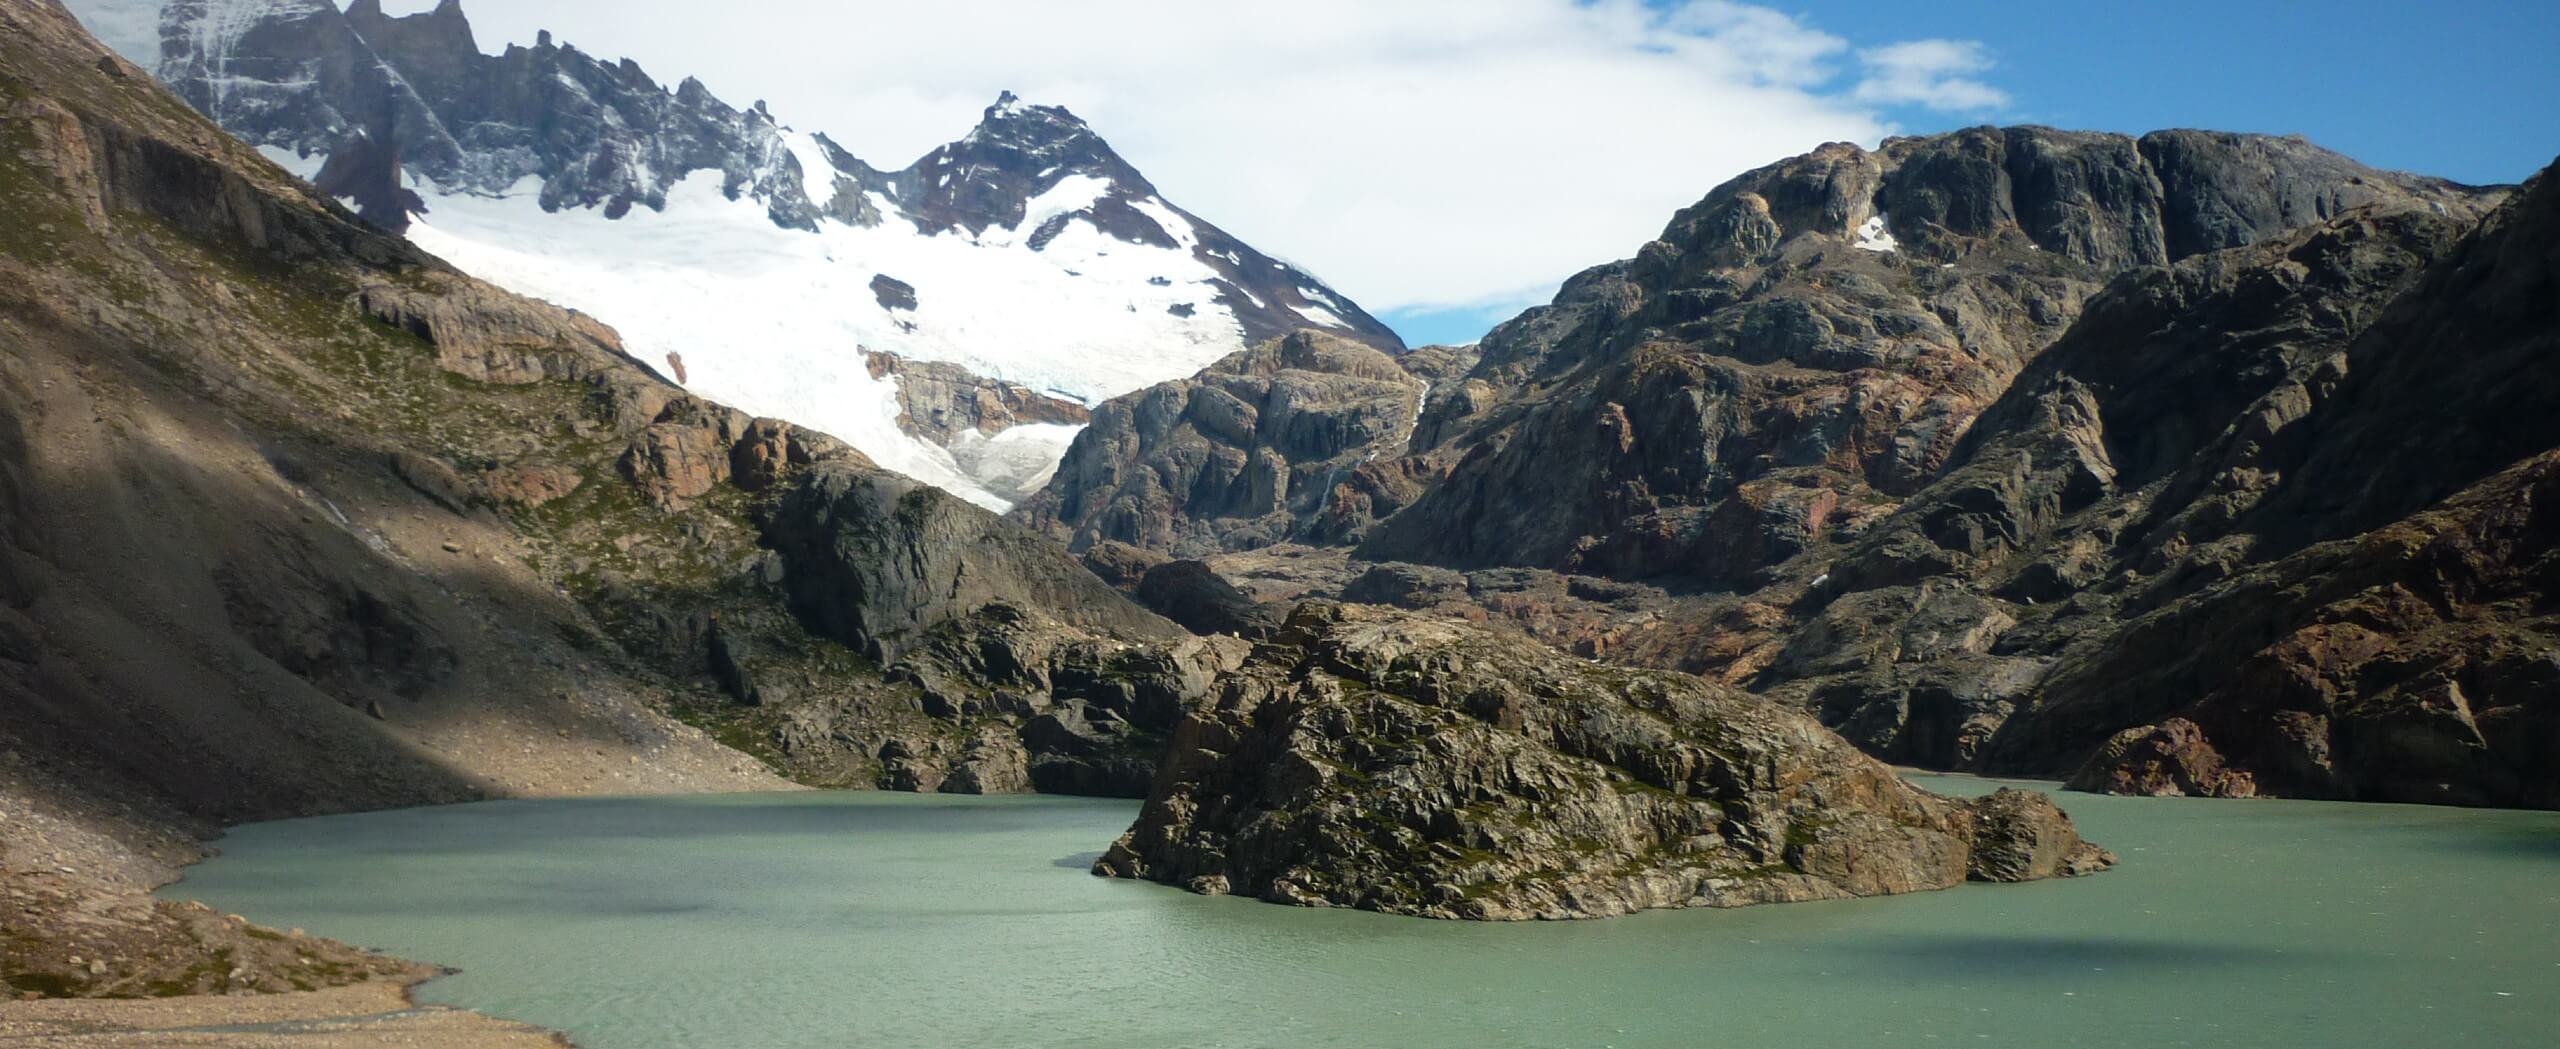 Los Glaciares from El Calafate to El Chaltén